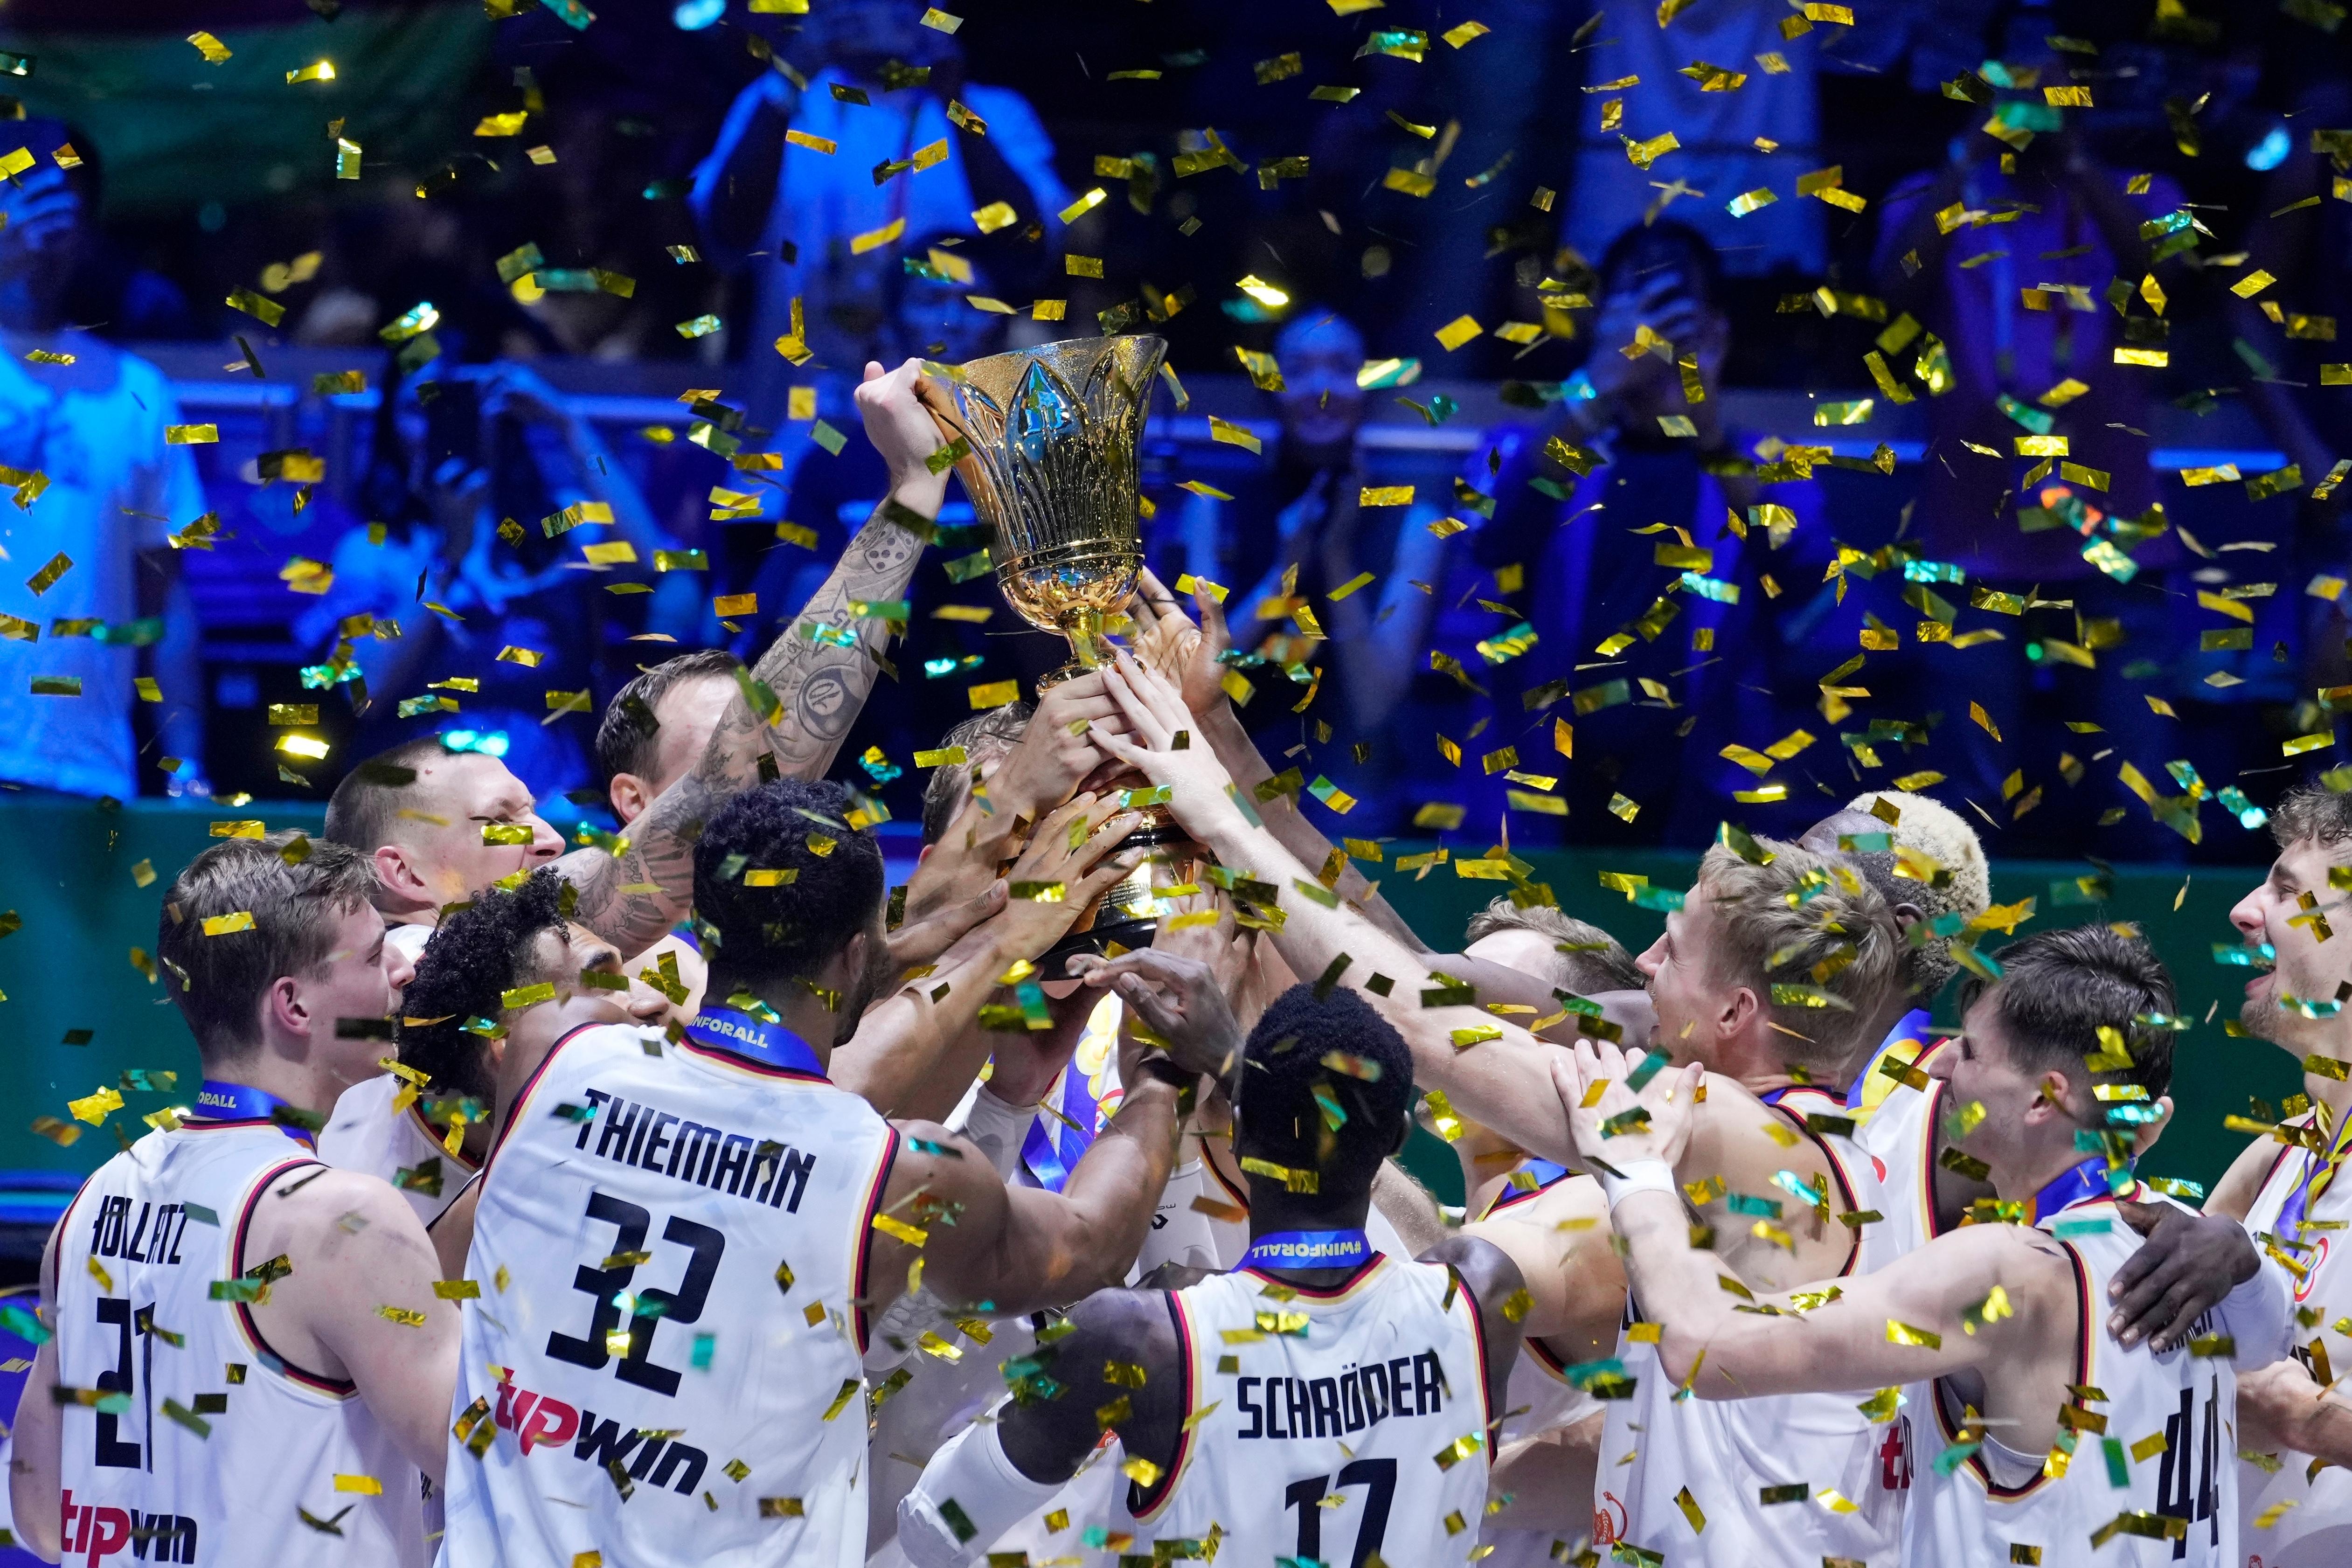 Krönung in Manila Deutschland holt erstmals Basketball-WM-Gold BR24